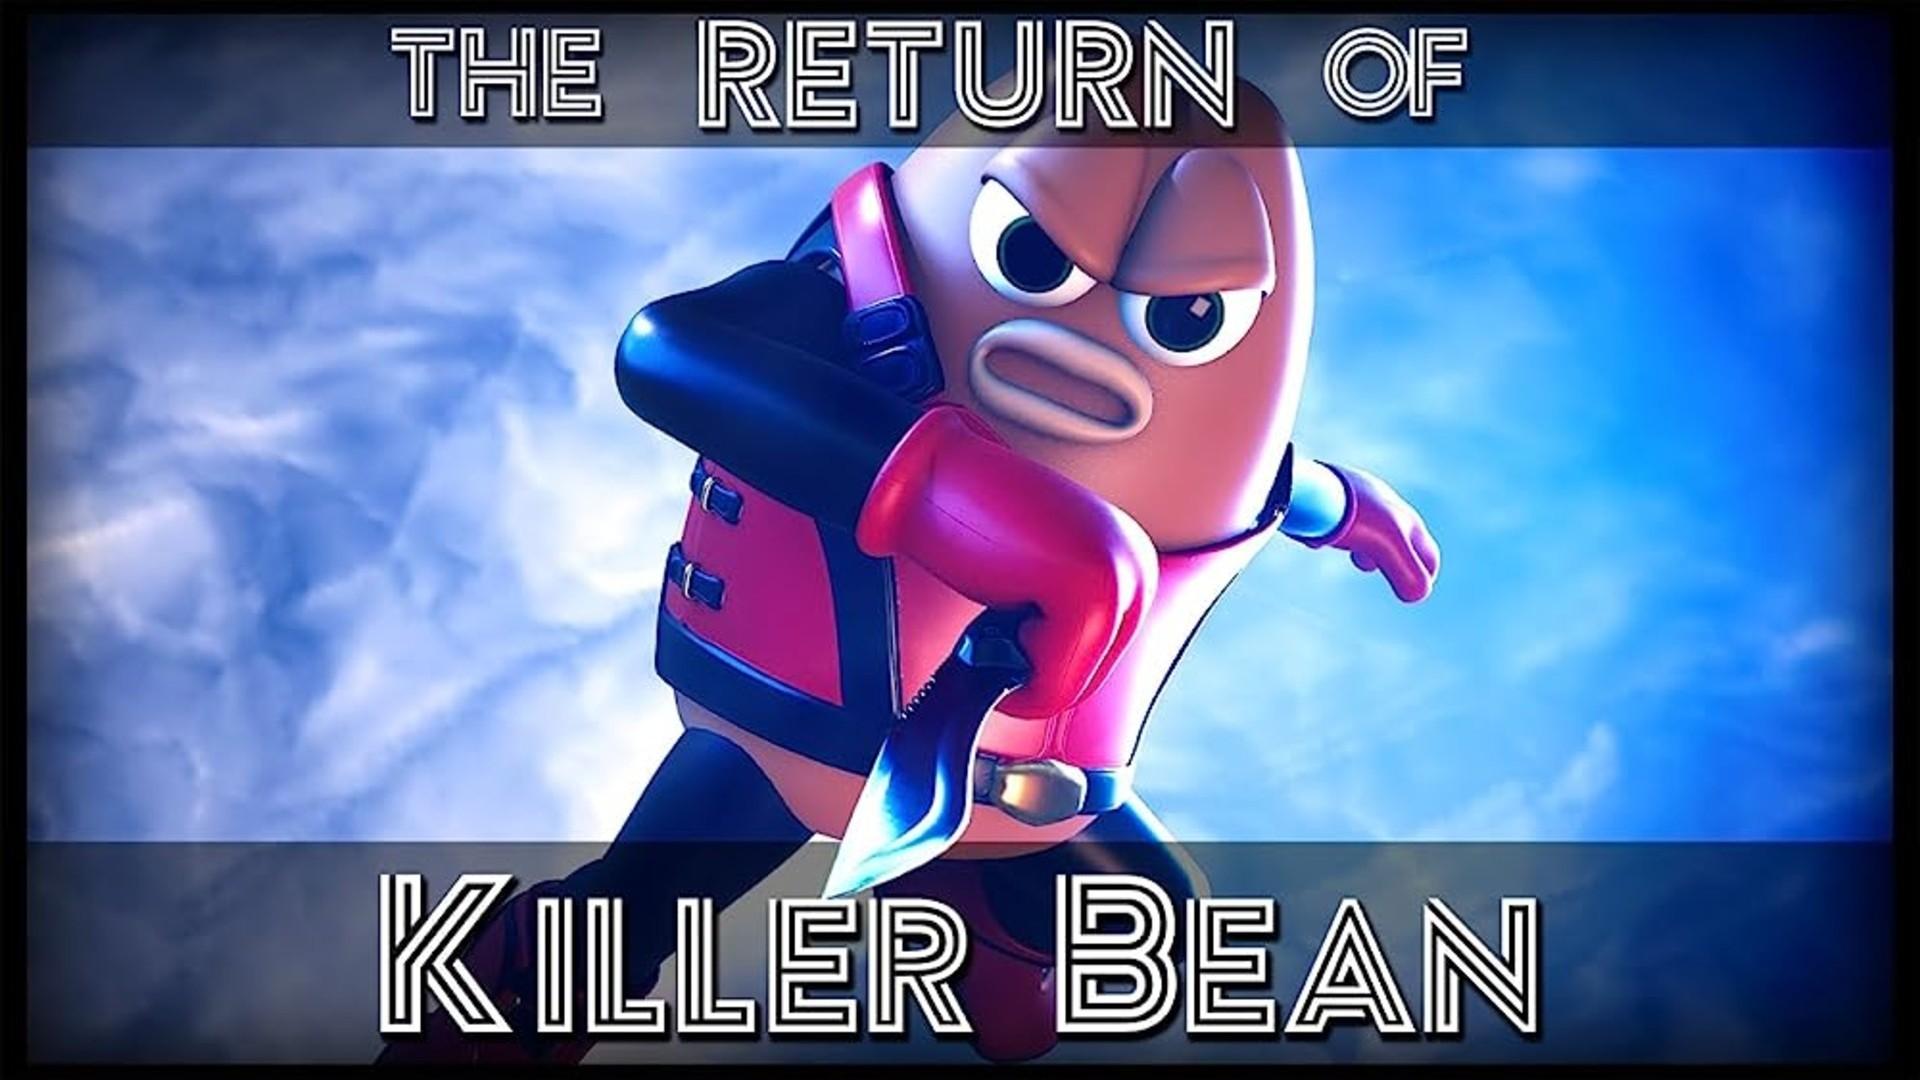 The Return of Killer Bean